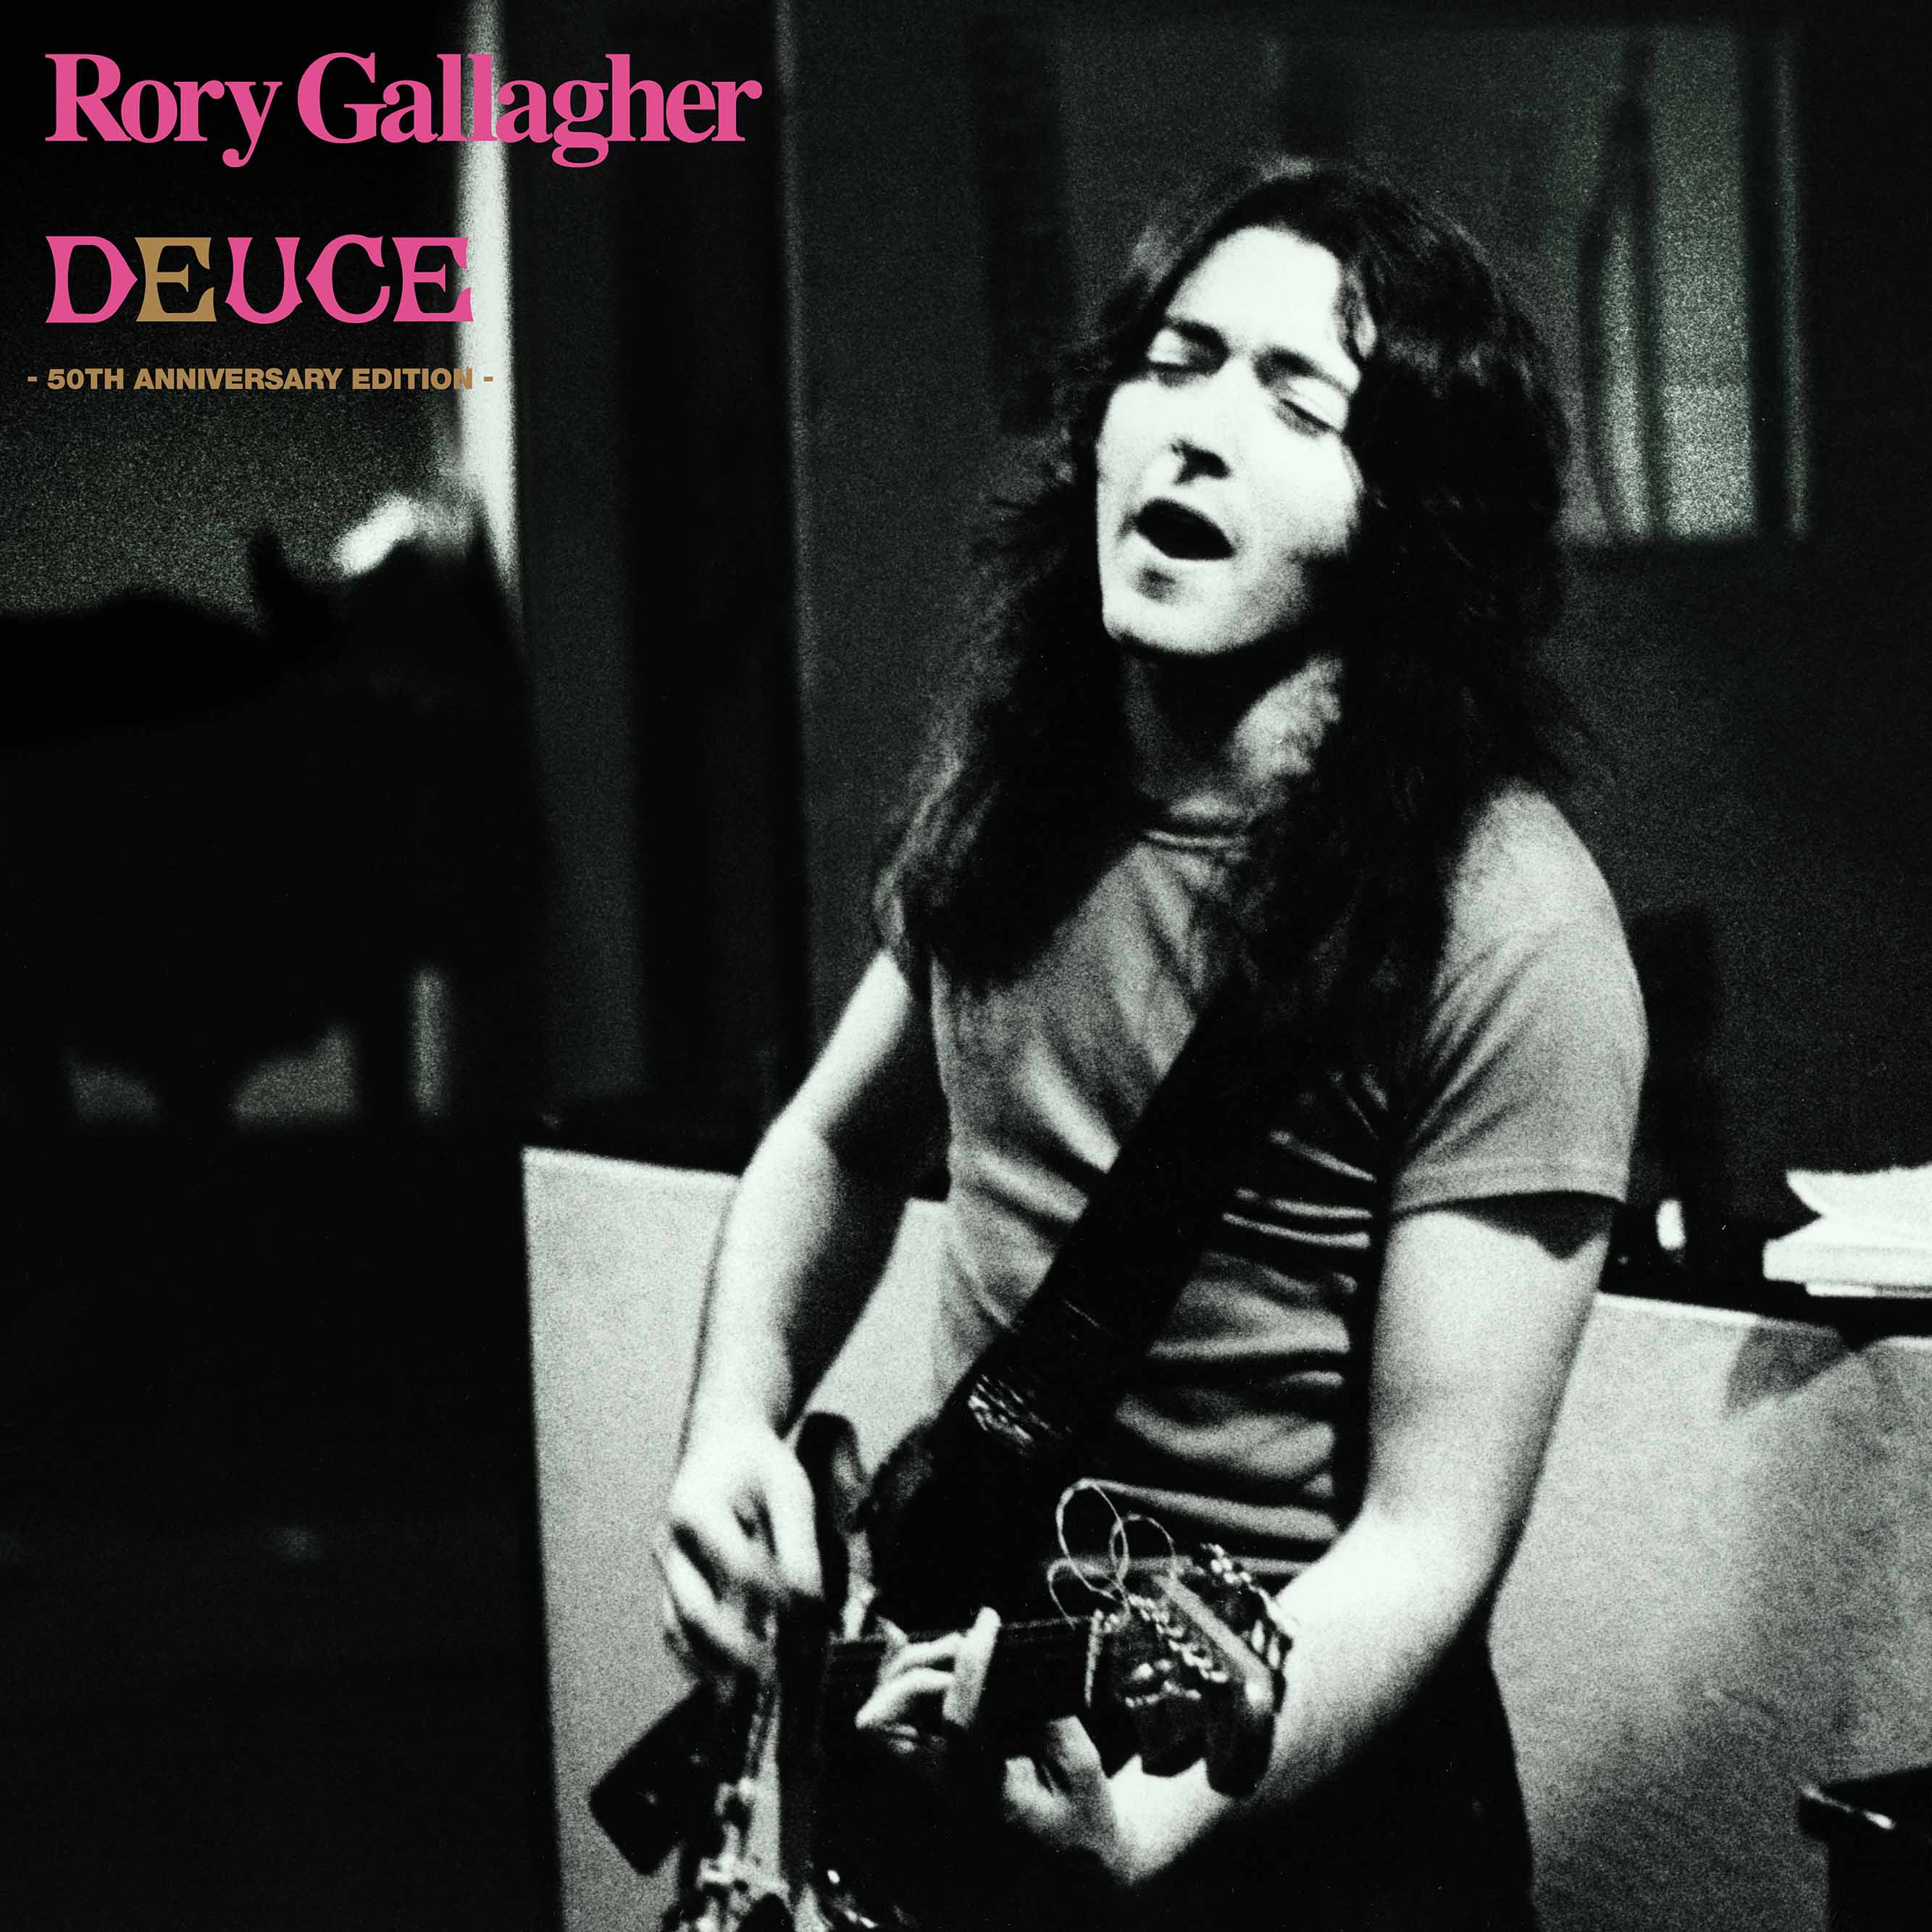 Rory Gallagher album - immagini